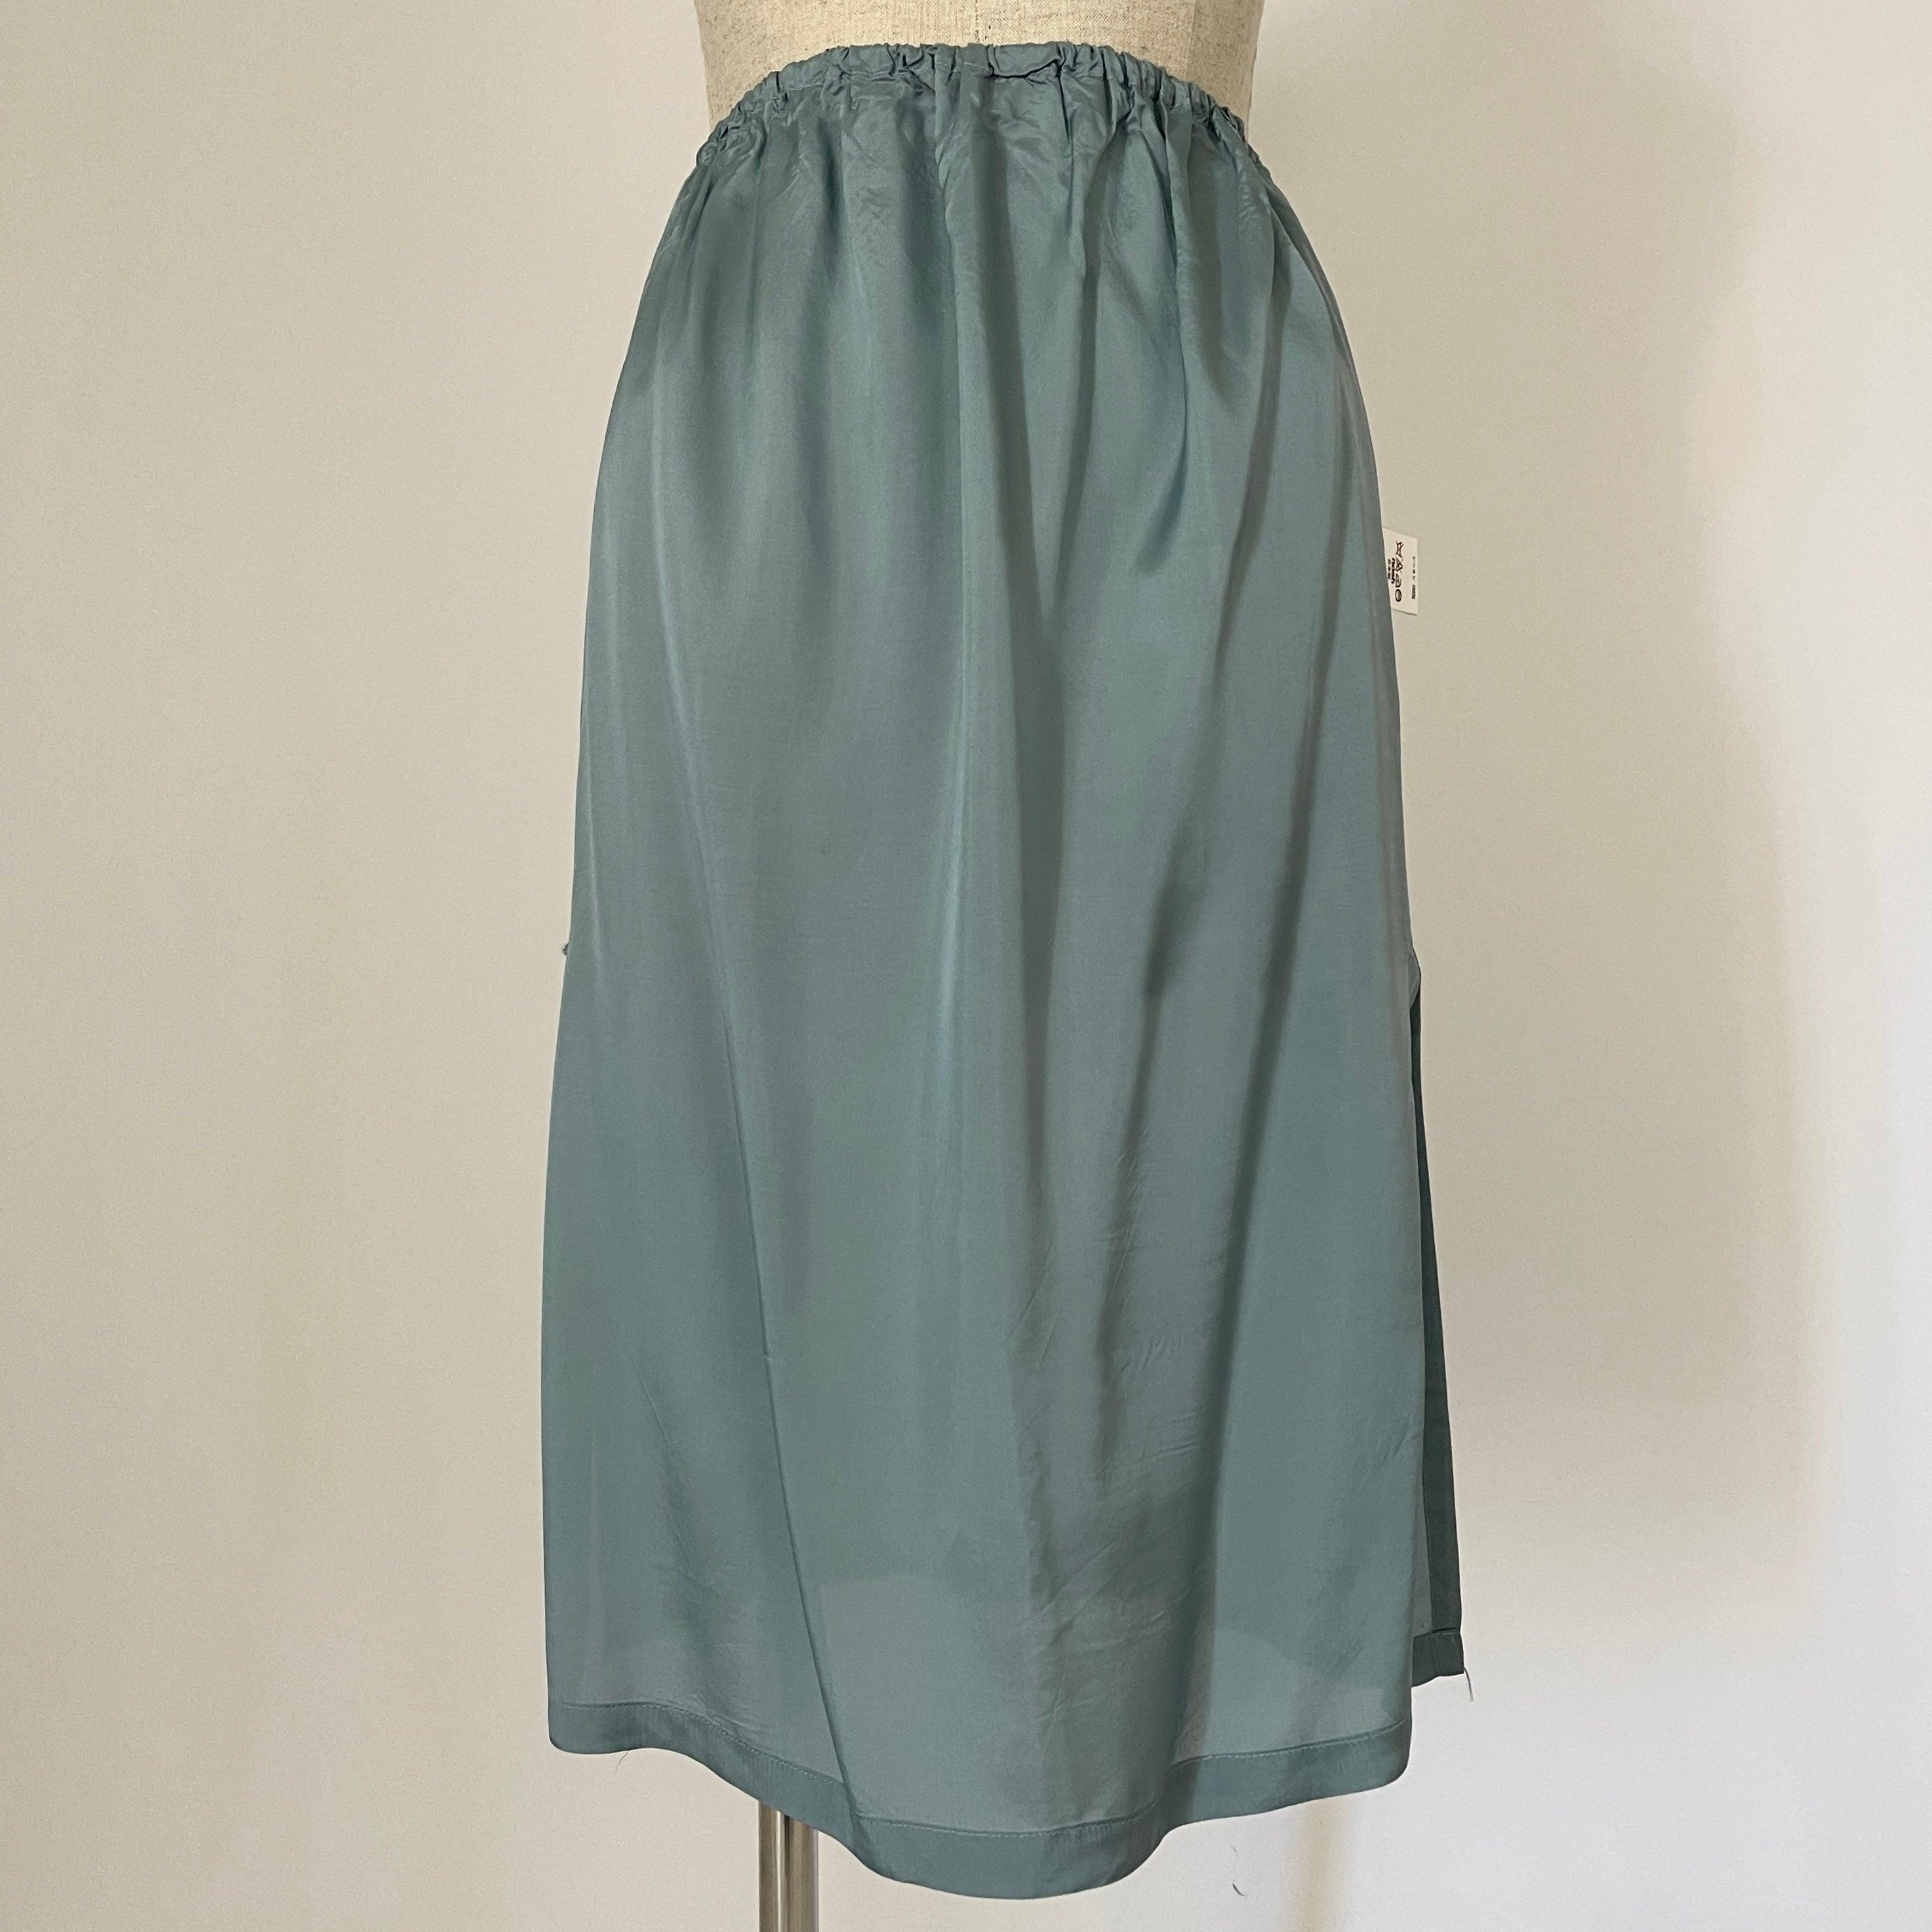 KEIKO KISHI BY NOSH - KEIKO KISHI BY NOSH Set: Blouse + Double Skirt - AVVIIVVA.COM